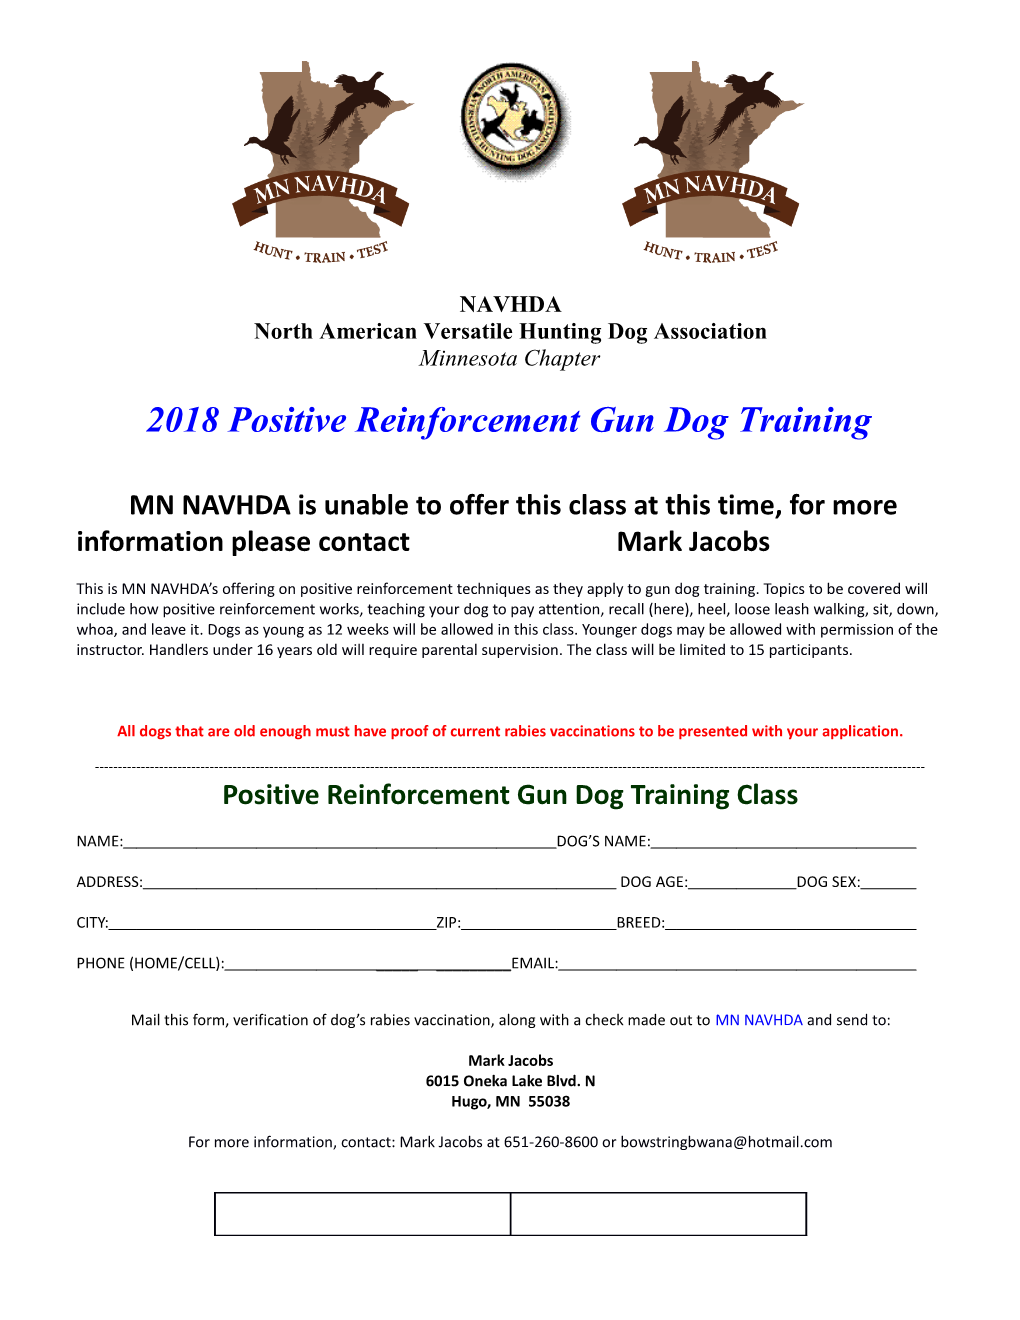 Positive Reinforcement Gun Dog Training Class